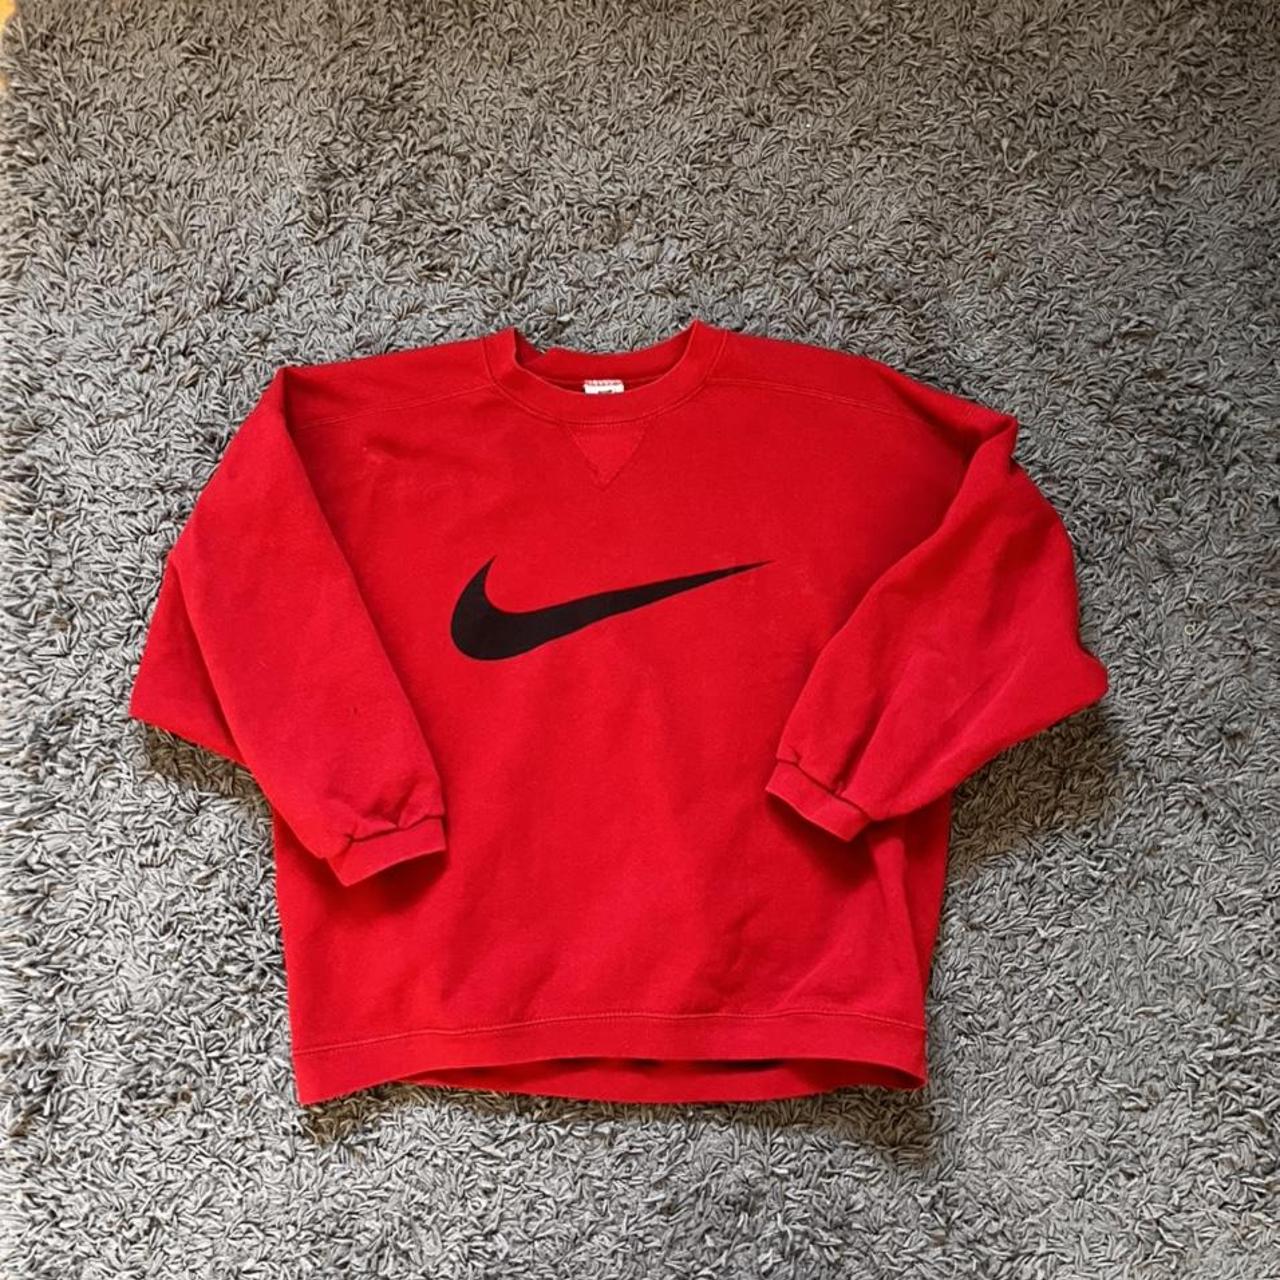 Nike Men's Red and Black Sweatshirt | Depop